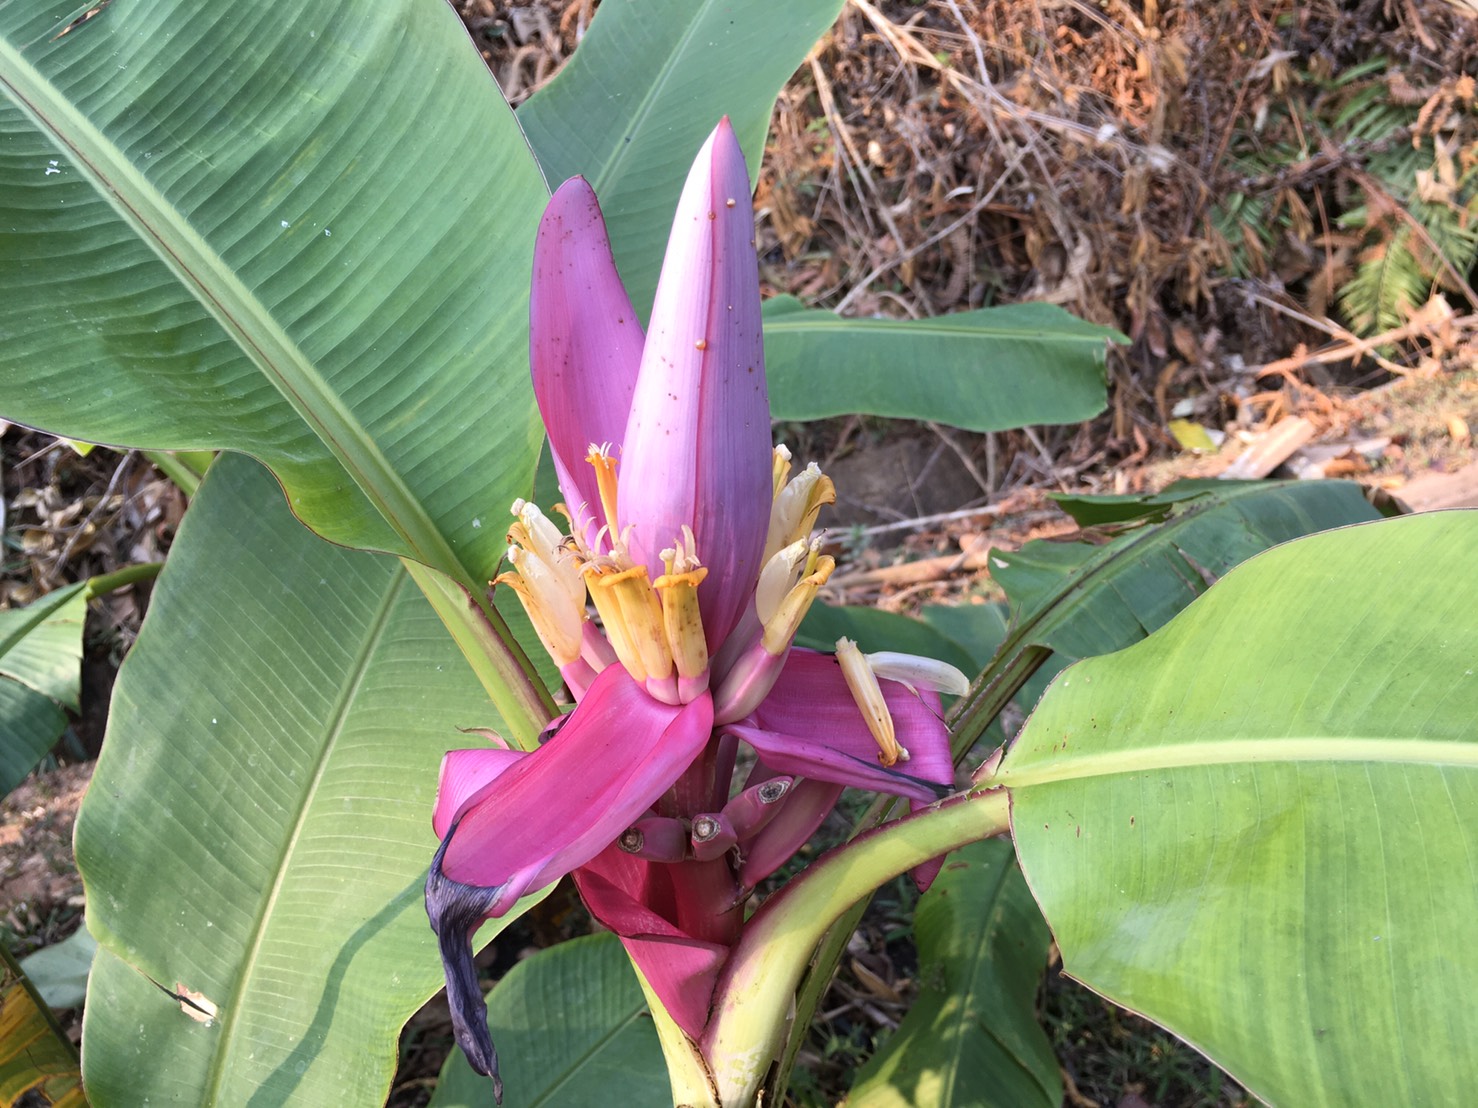 กล้วยบัวสีม่วง Musa ornata  Roxb. ‘Royal purple’ <br/>MUSACEAE